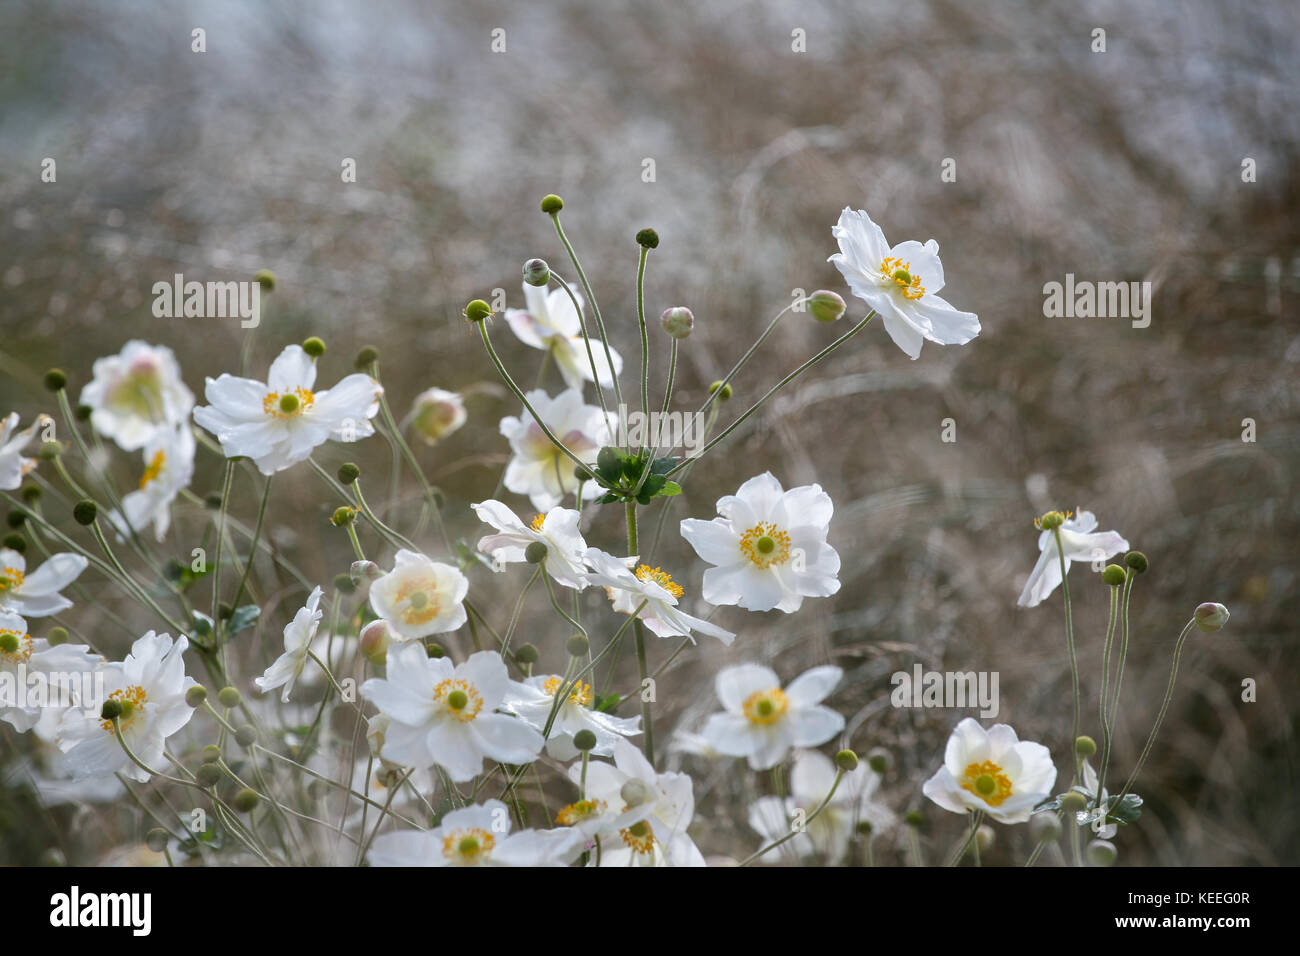 Anemone 'Honorine Jobert' / anemone japonais blanc parmi les graminées Banque D'Images